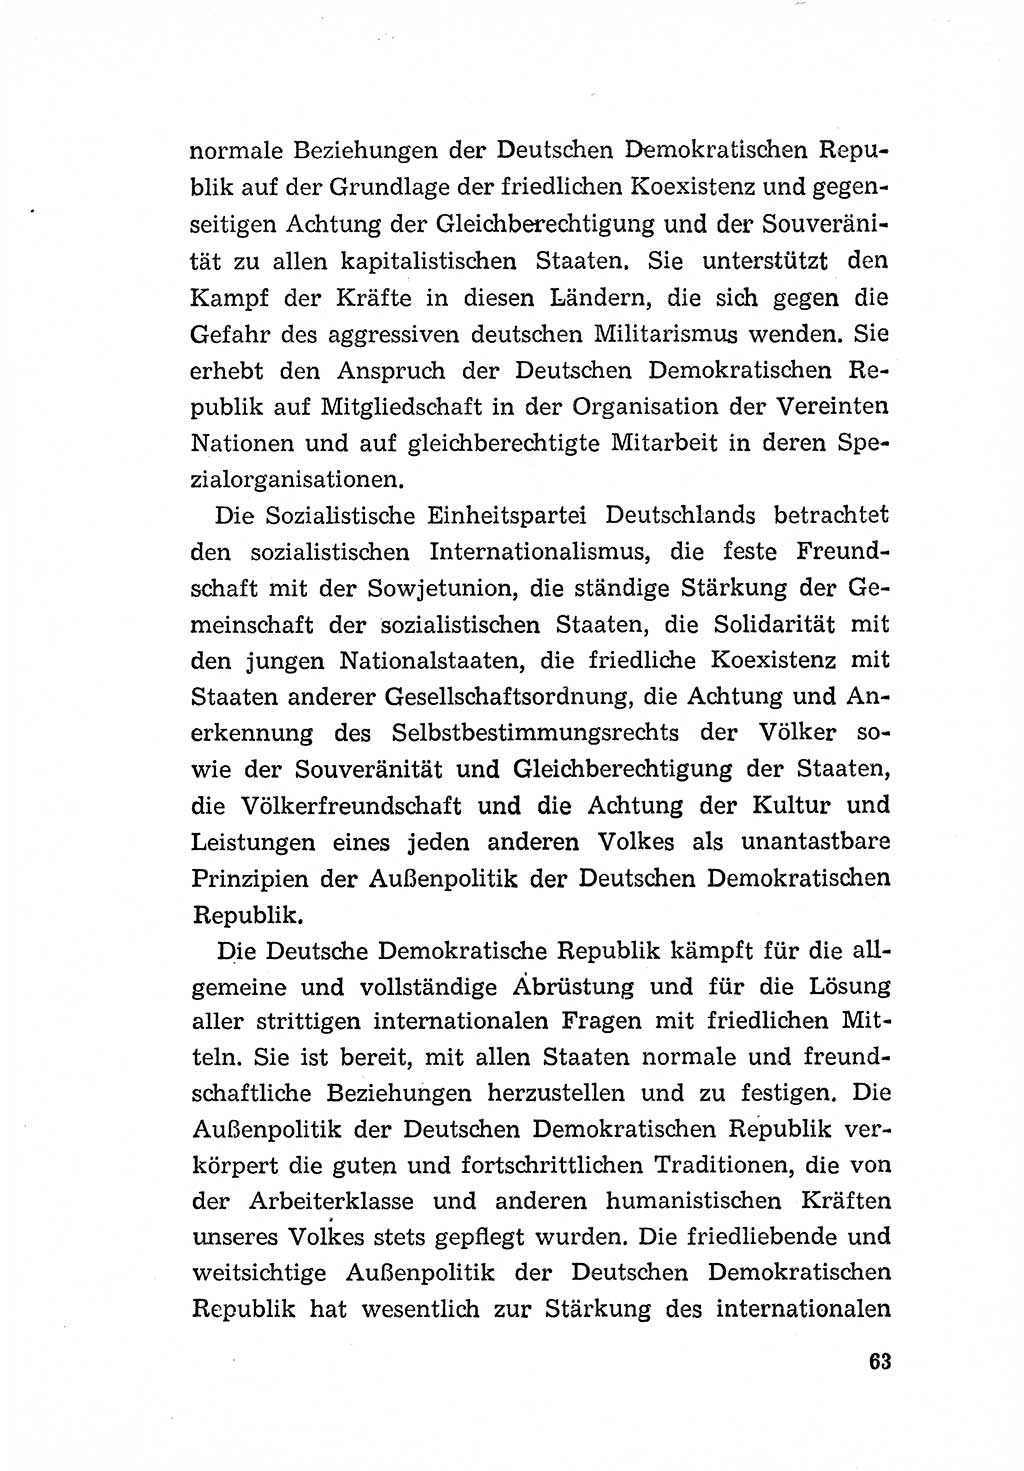 Programm der Sozialistischen Einheitspartei Deutschlands (SED) [Deutsche Demokratische Republik (DDR)] 1963, Seite 63 (Progr. SED DDR 1963, S. 63)